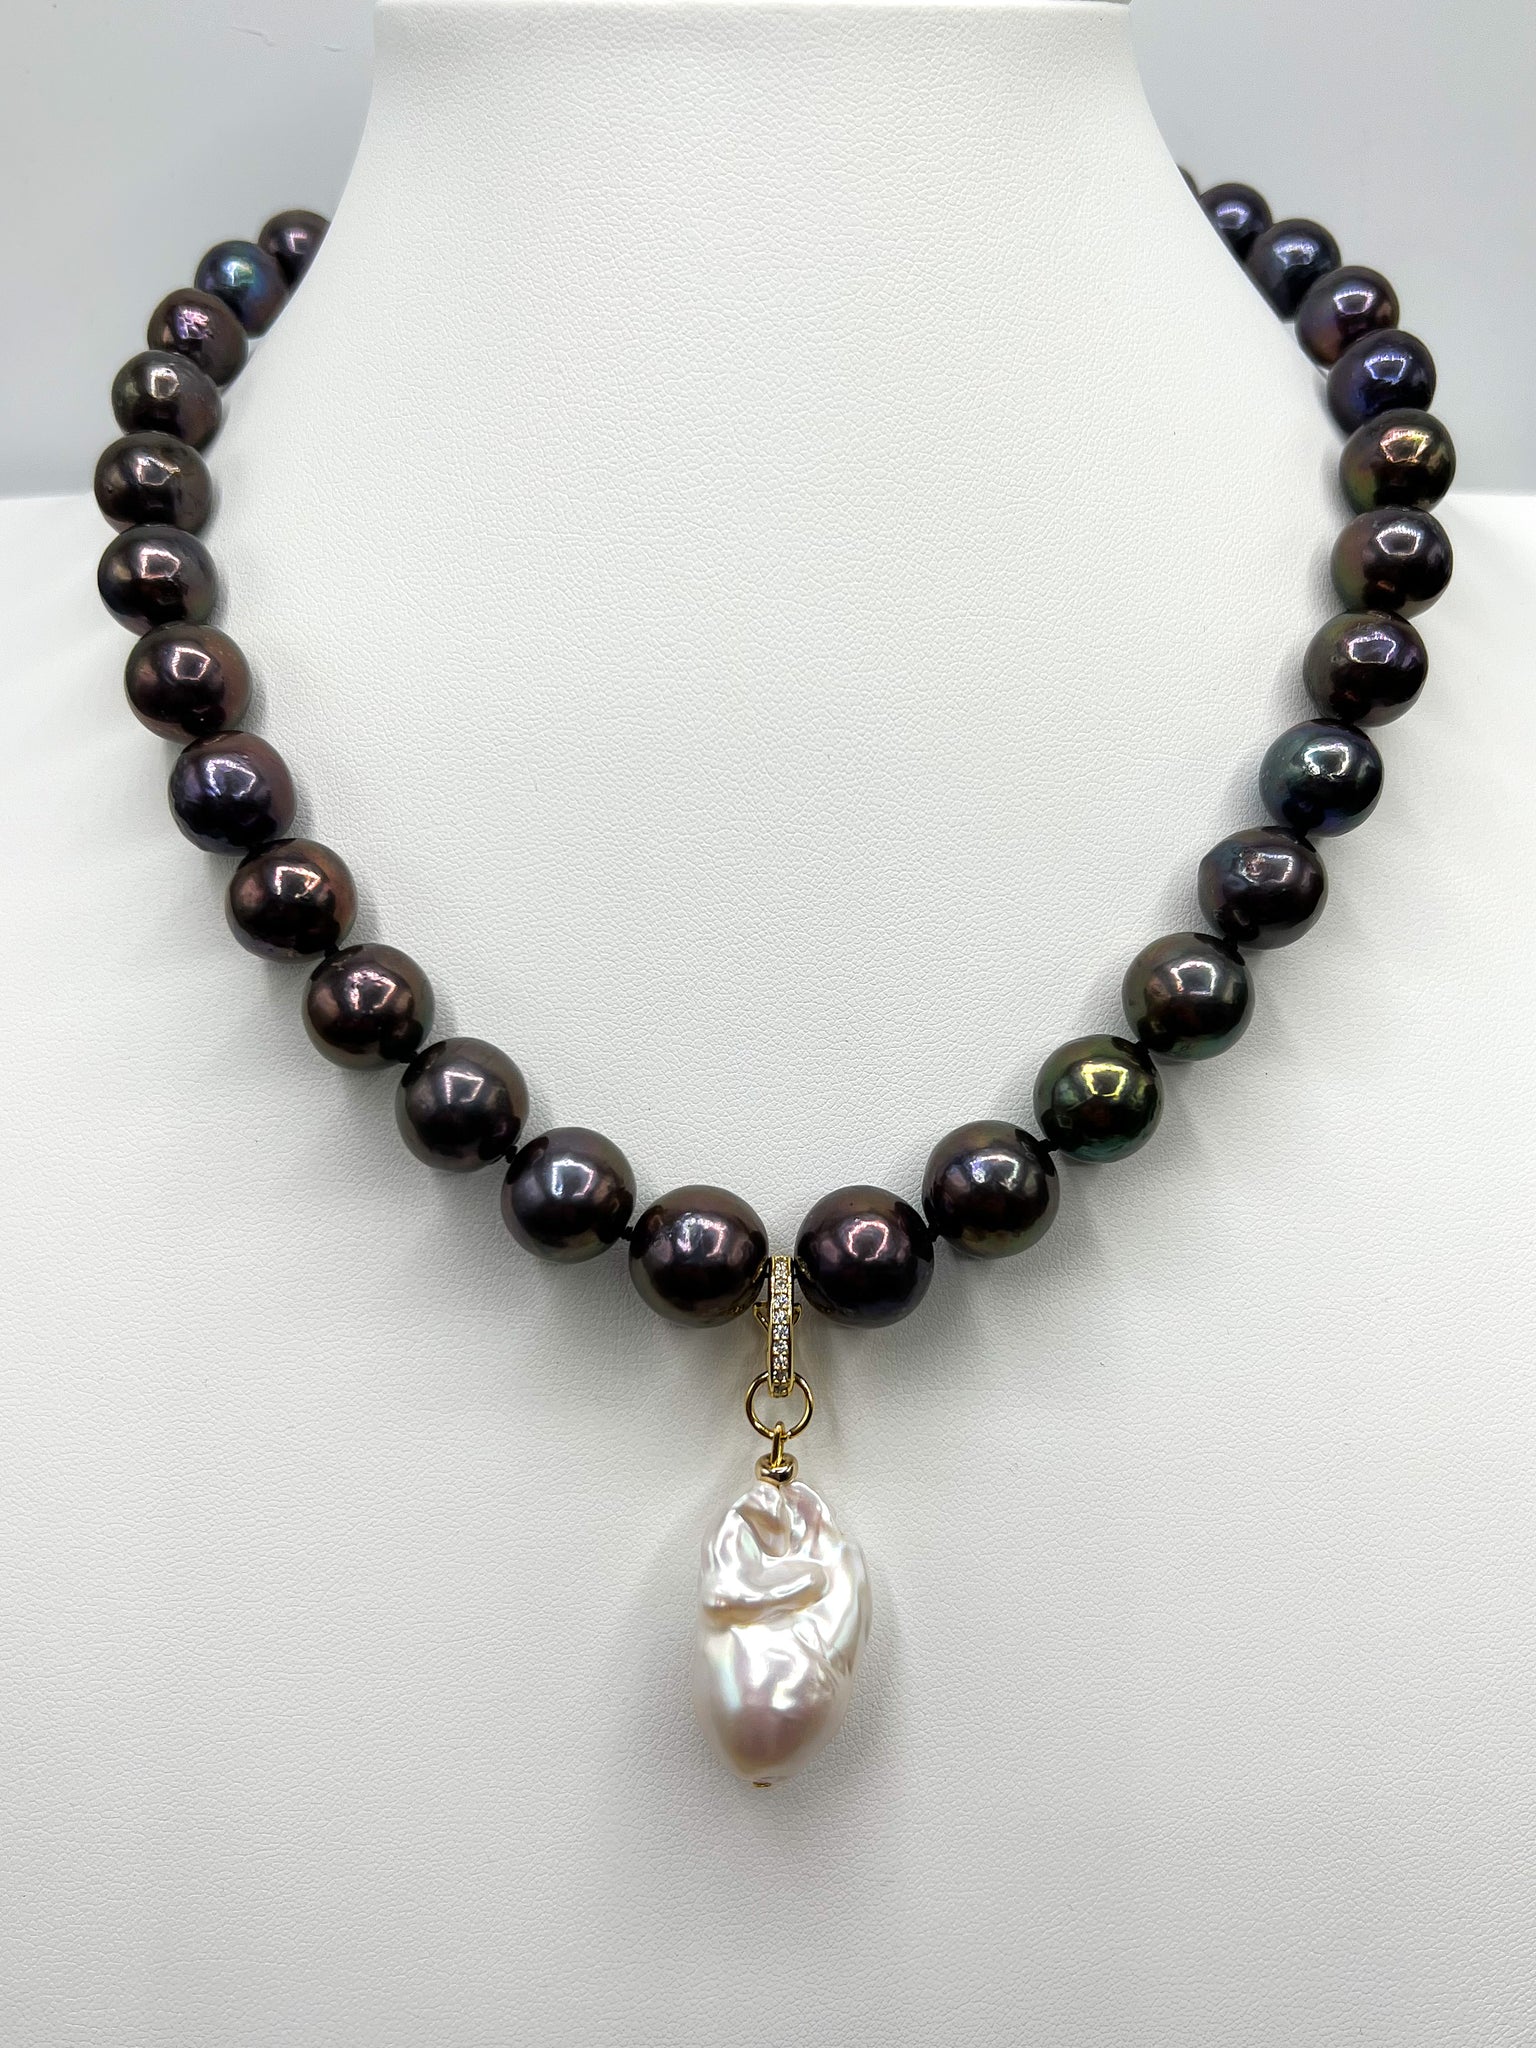 The Aruba necklace